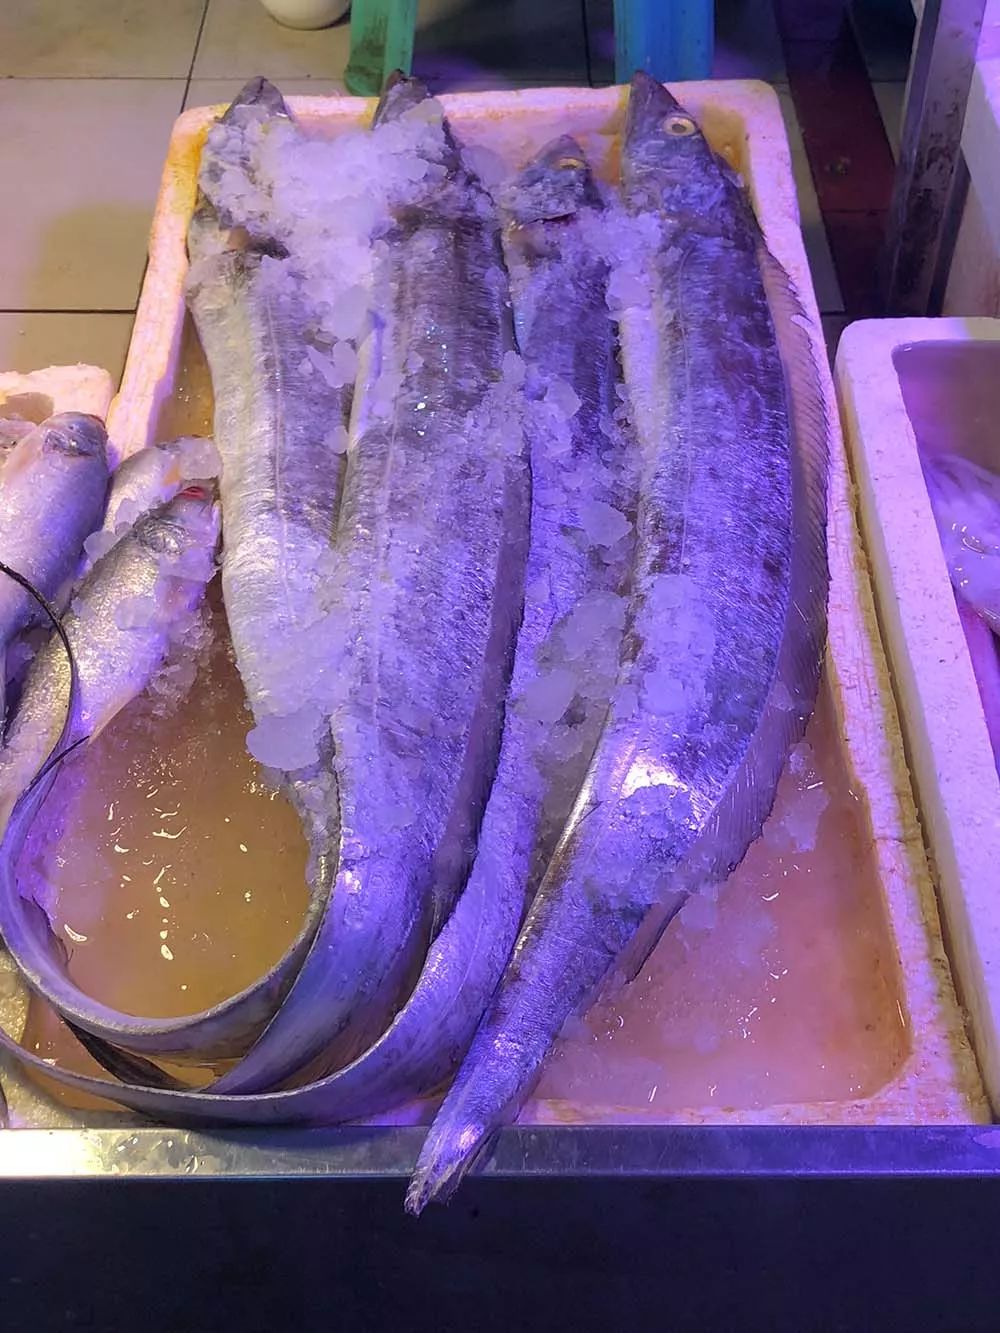 你想吃的海鲜涨价了吗?一起去逛逛休渔期的沙田海鲜市场